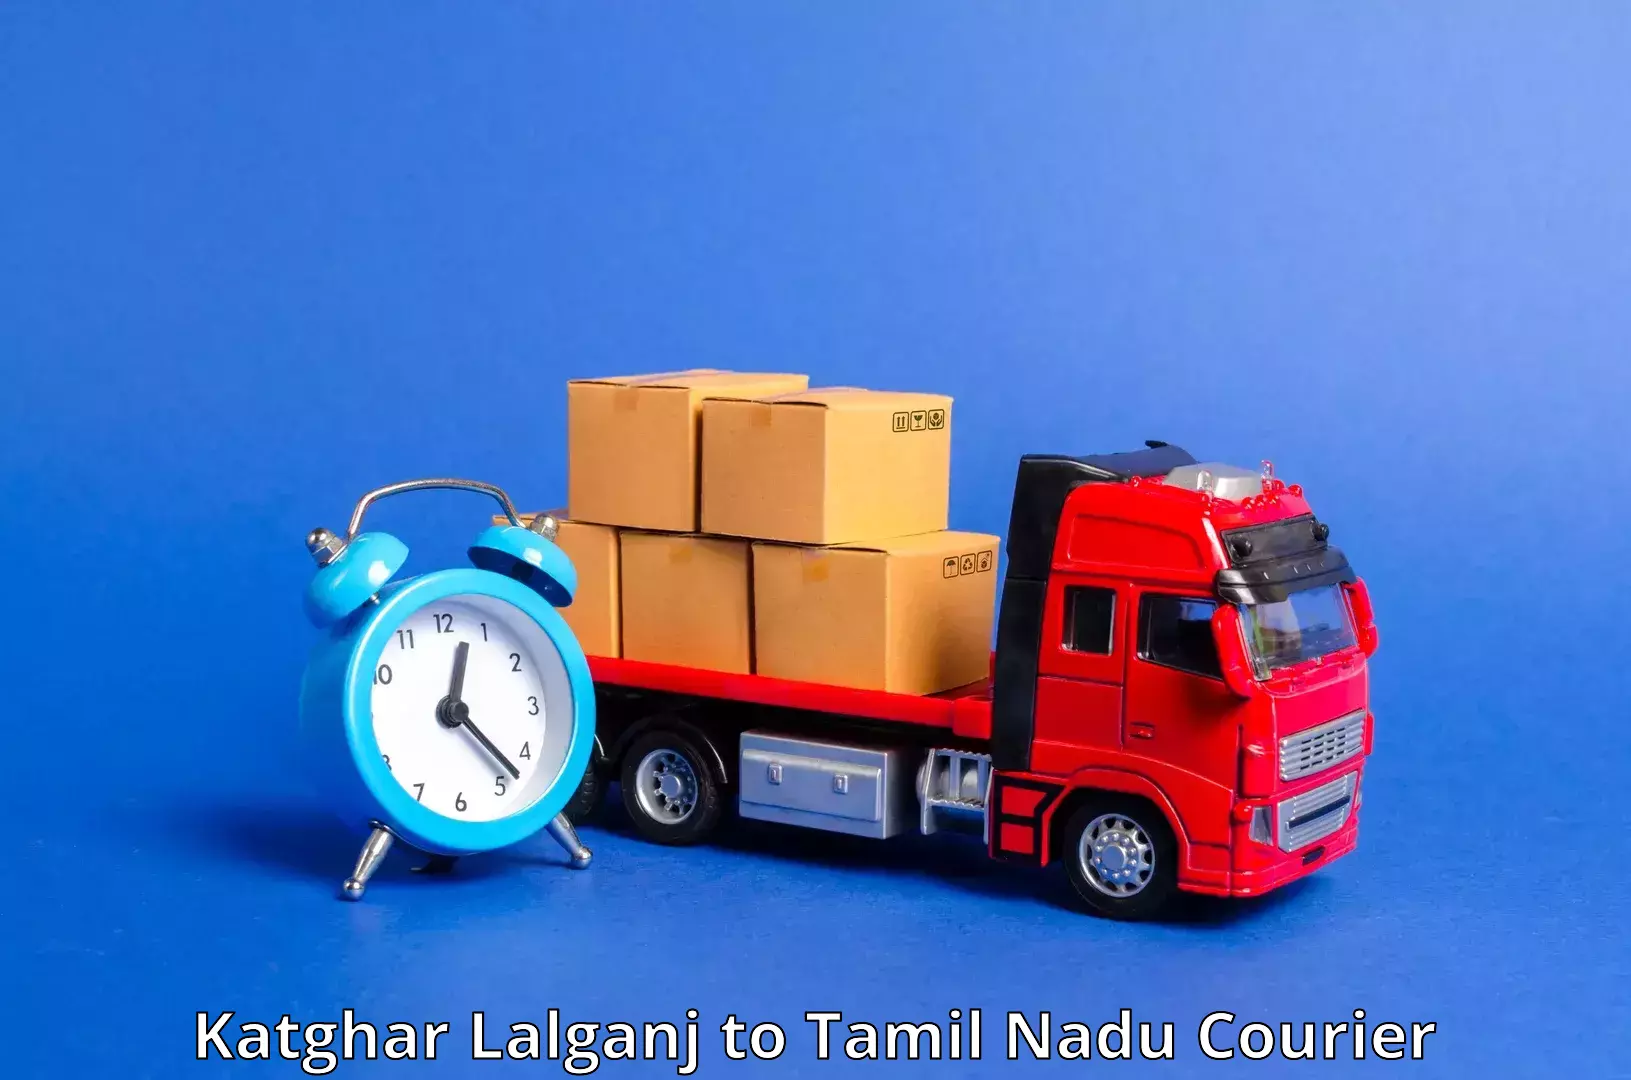 Reliable package handling Katghar Lalganj to Tamil Nadu